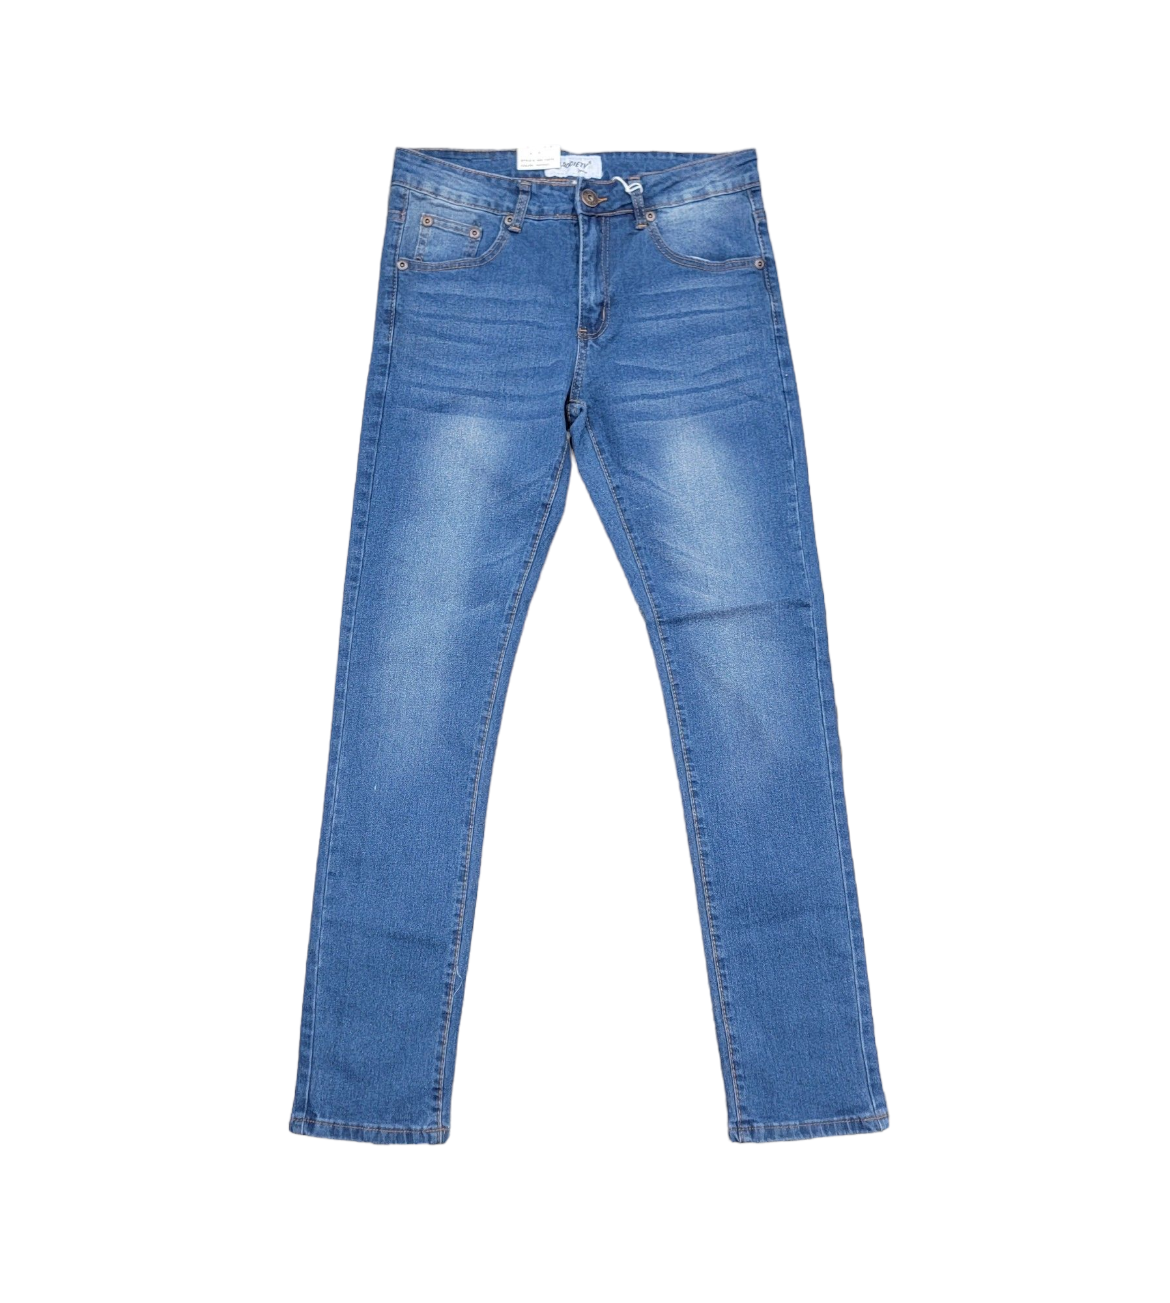 M Society Men's Super Stretchy Skinny Fit Jeans Indigo 13075